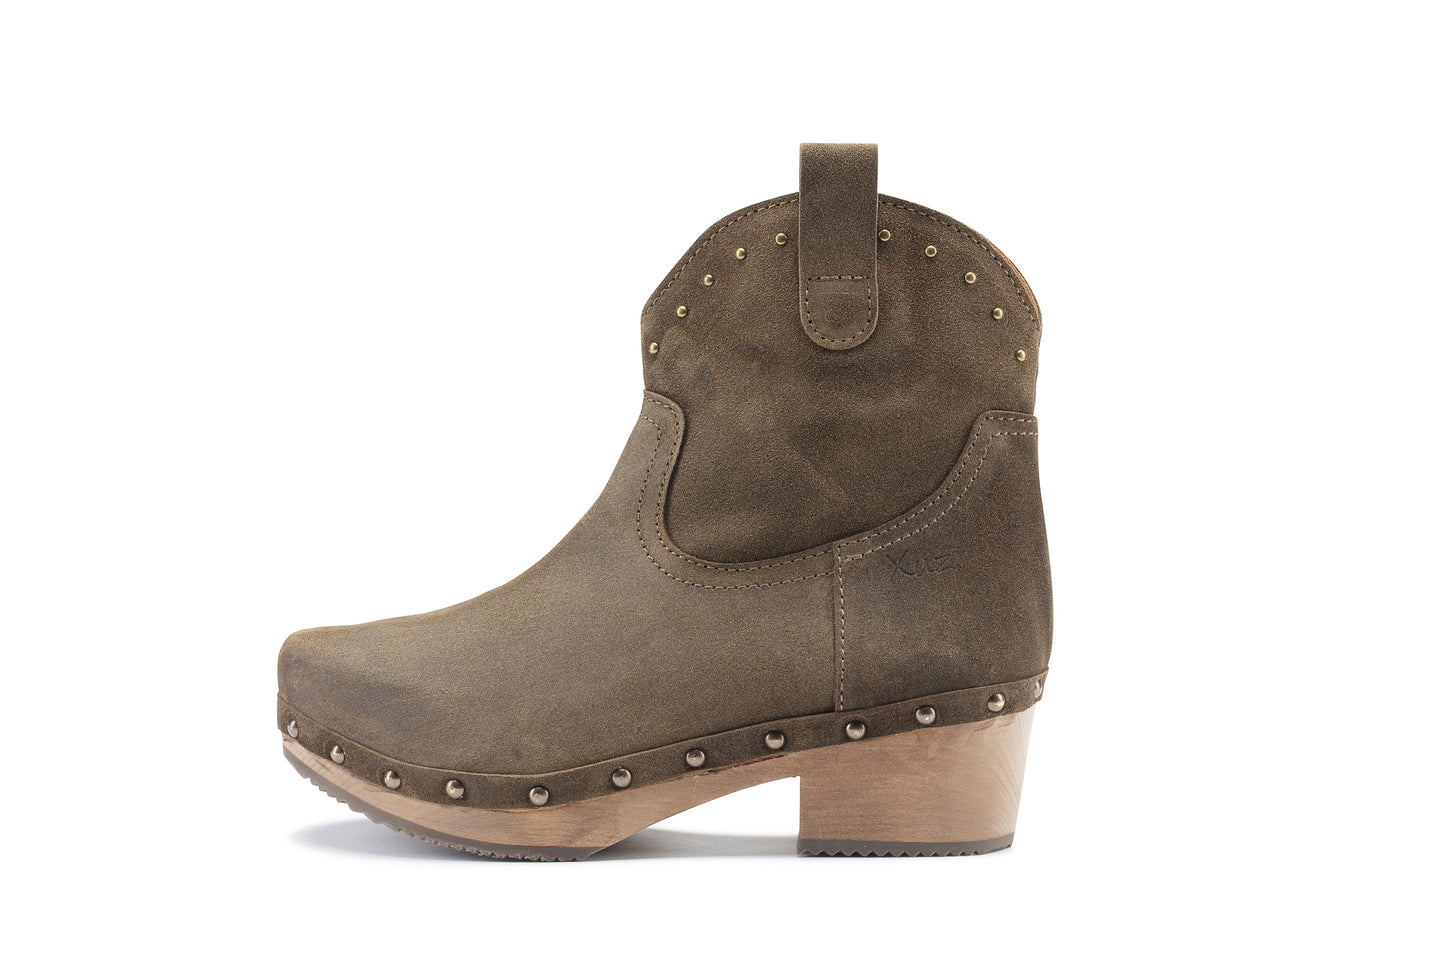 Boot with wooden heel